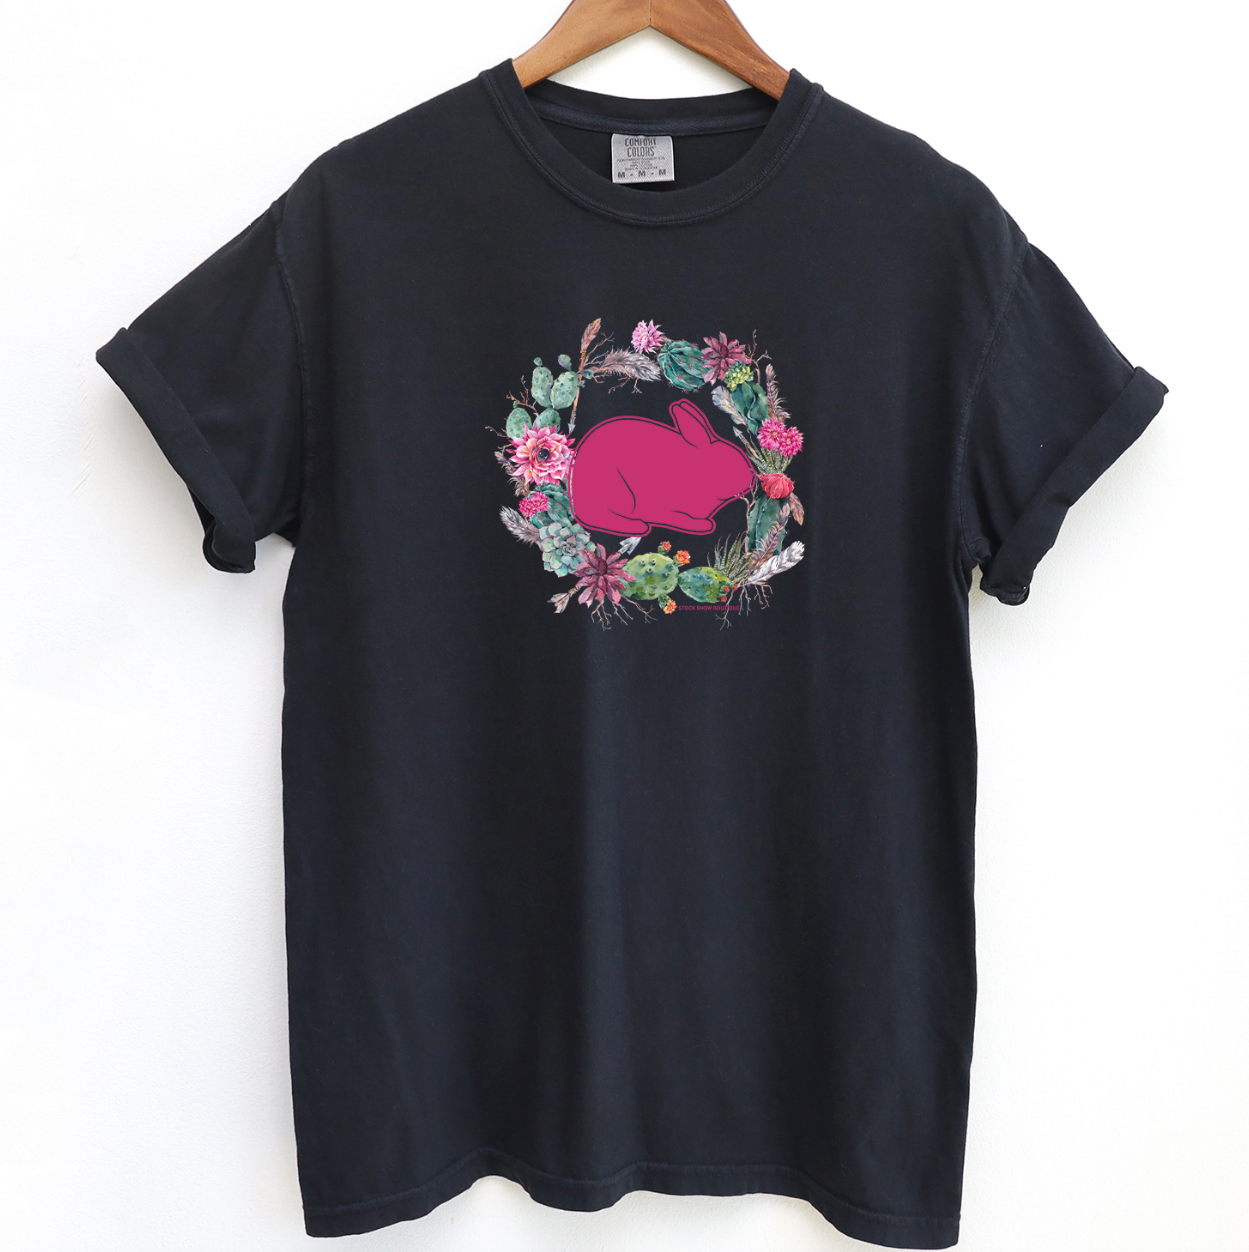 Rabbit Cactus Wreath ComfortWash/ComfortColor T-Shirt (S-4XL) - Multiple Colors!